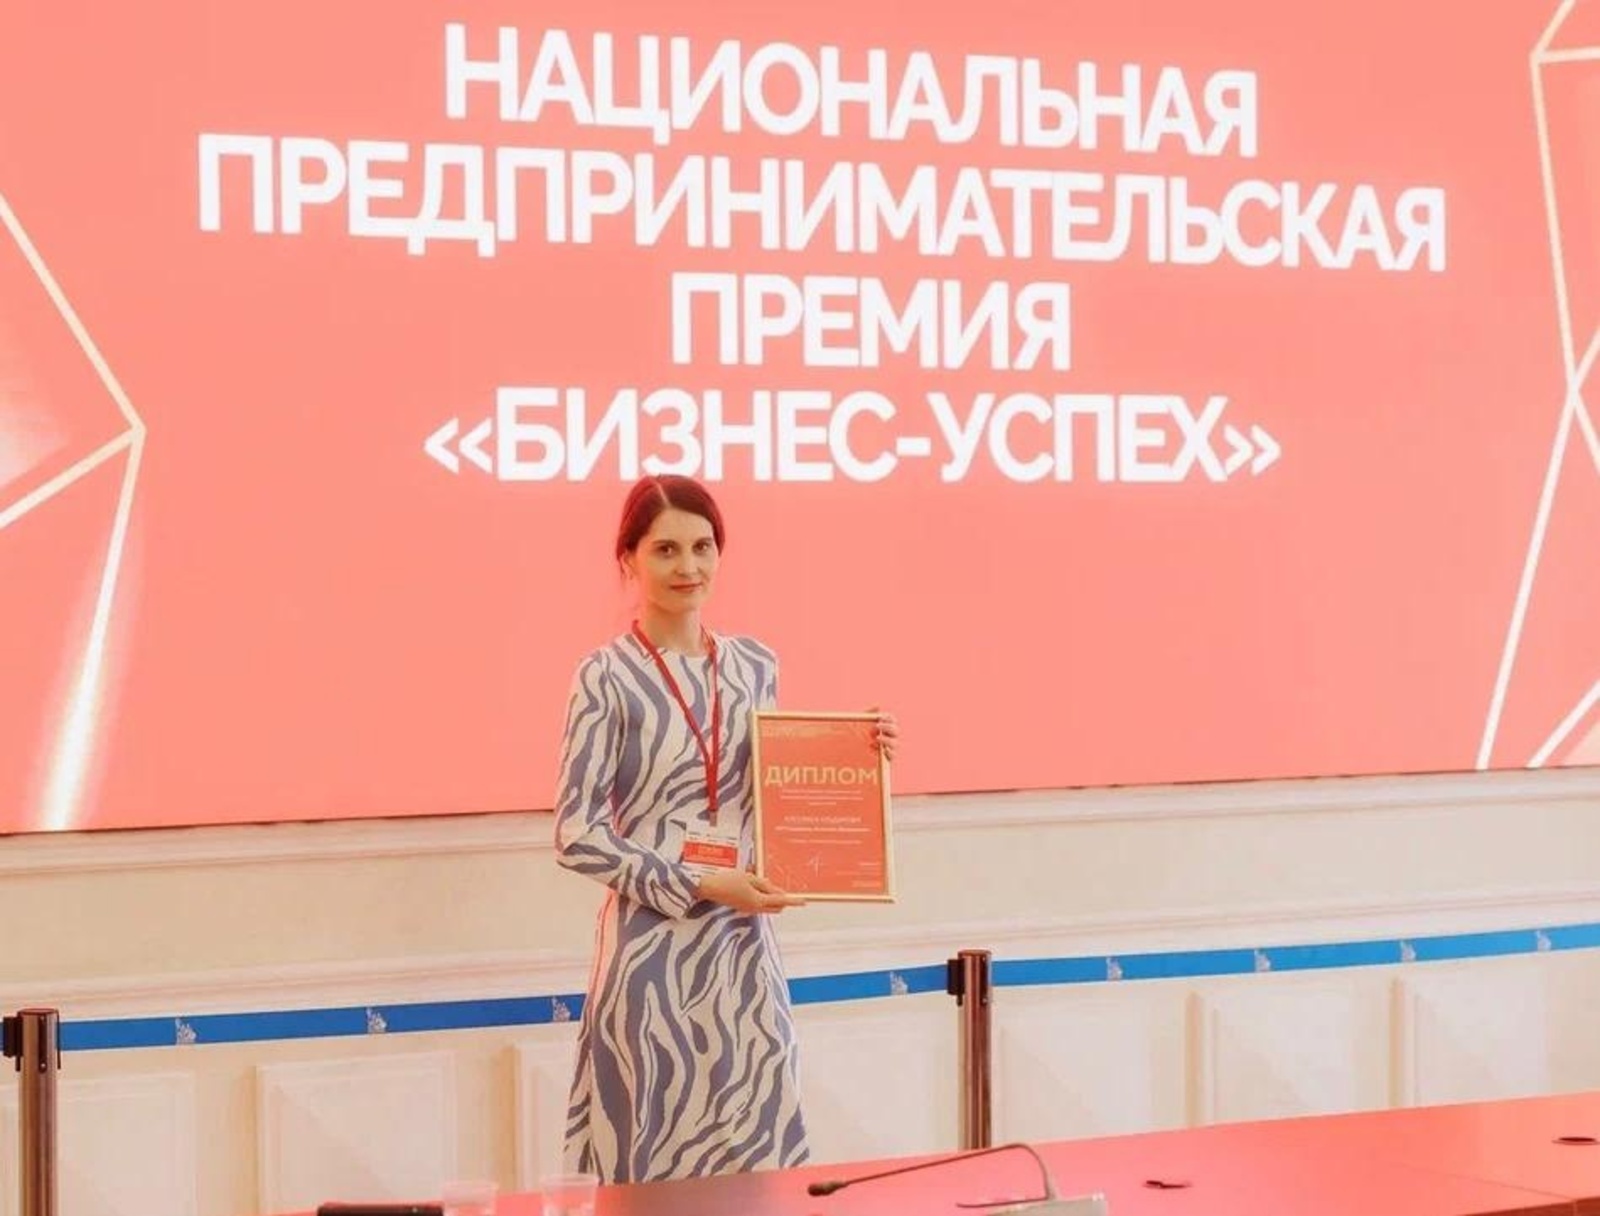 Предприниматель из г.Туймазы Башкирии стала финалистом национальной премии "Бизнес -Успех"